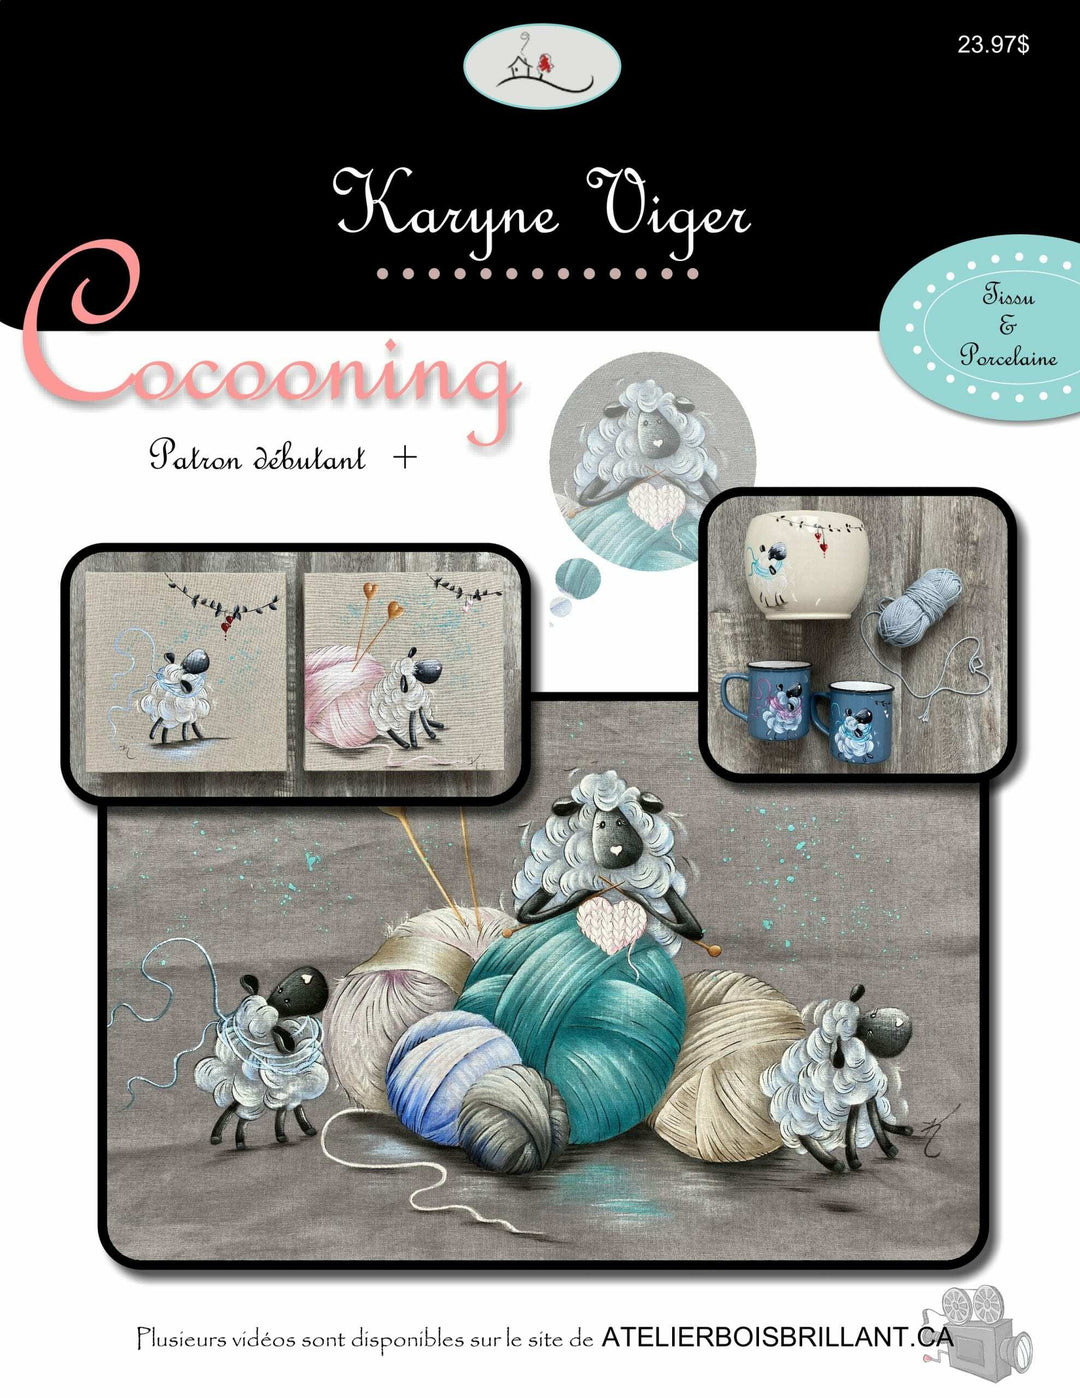 Cocooning/Karyne Viger